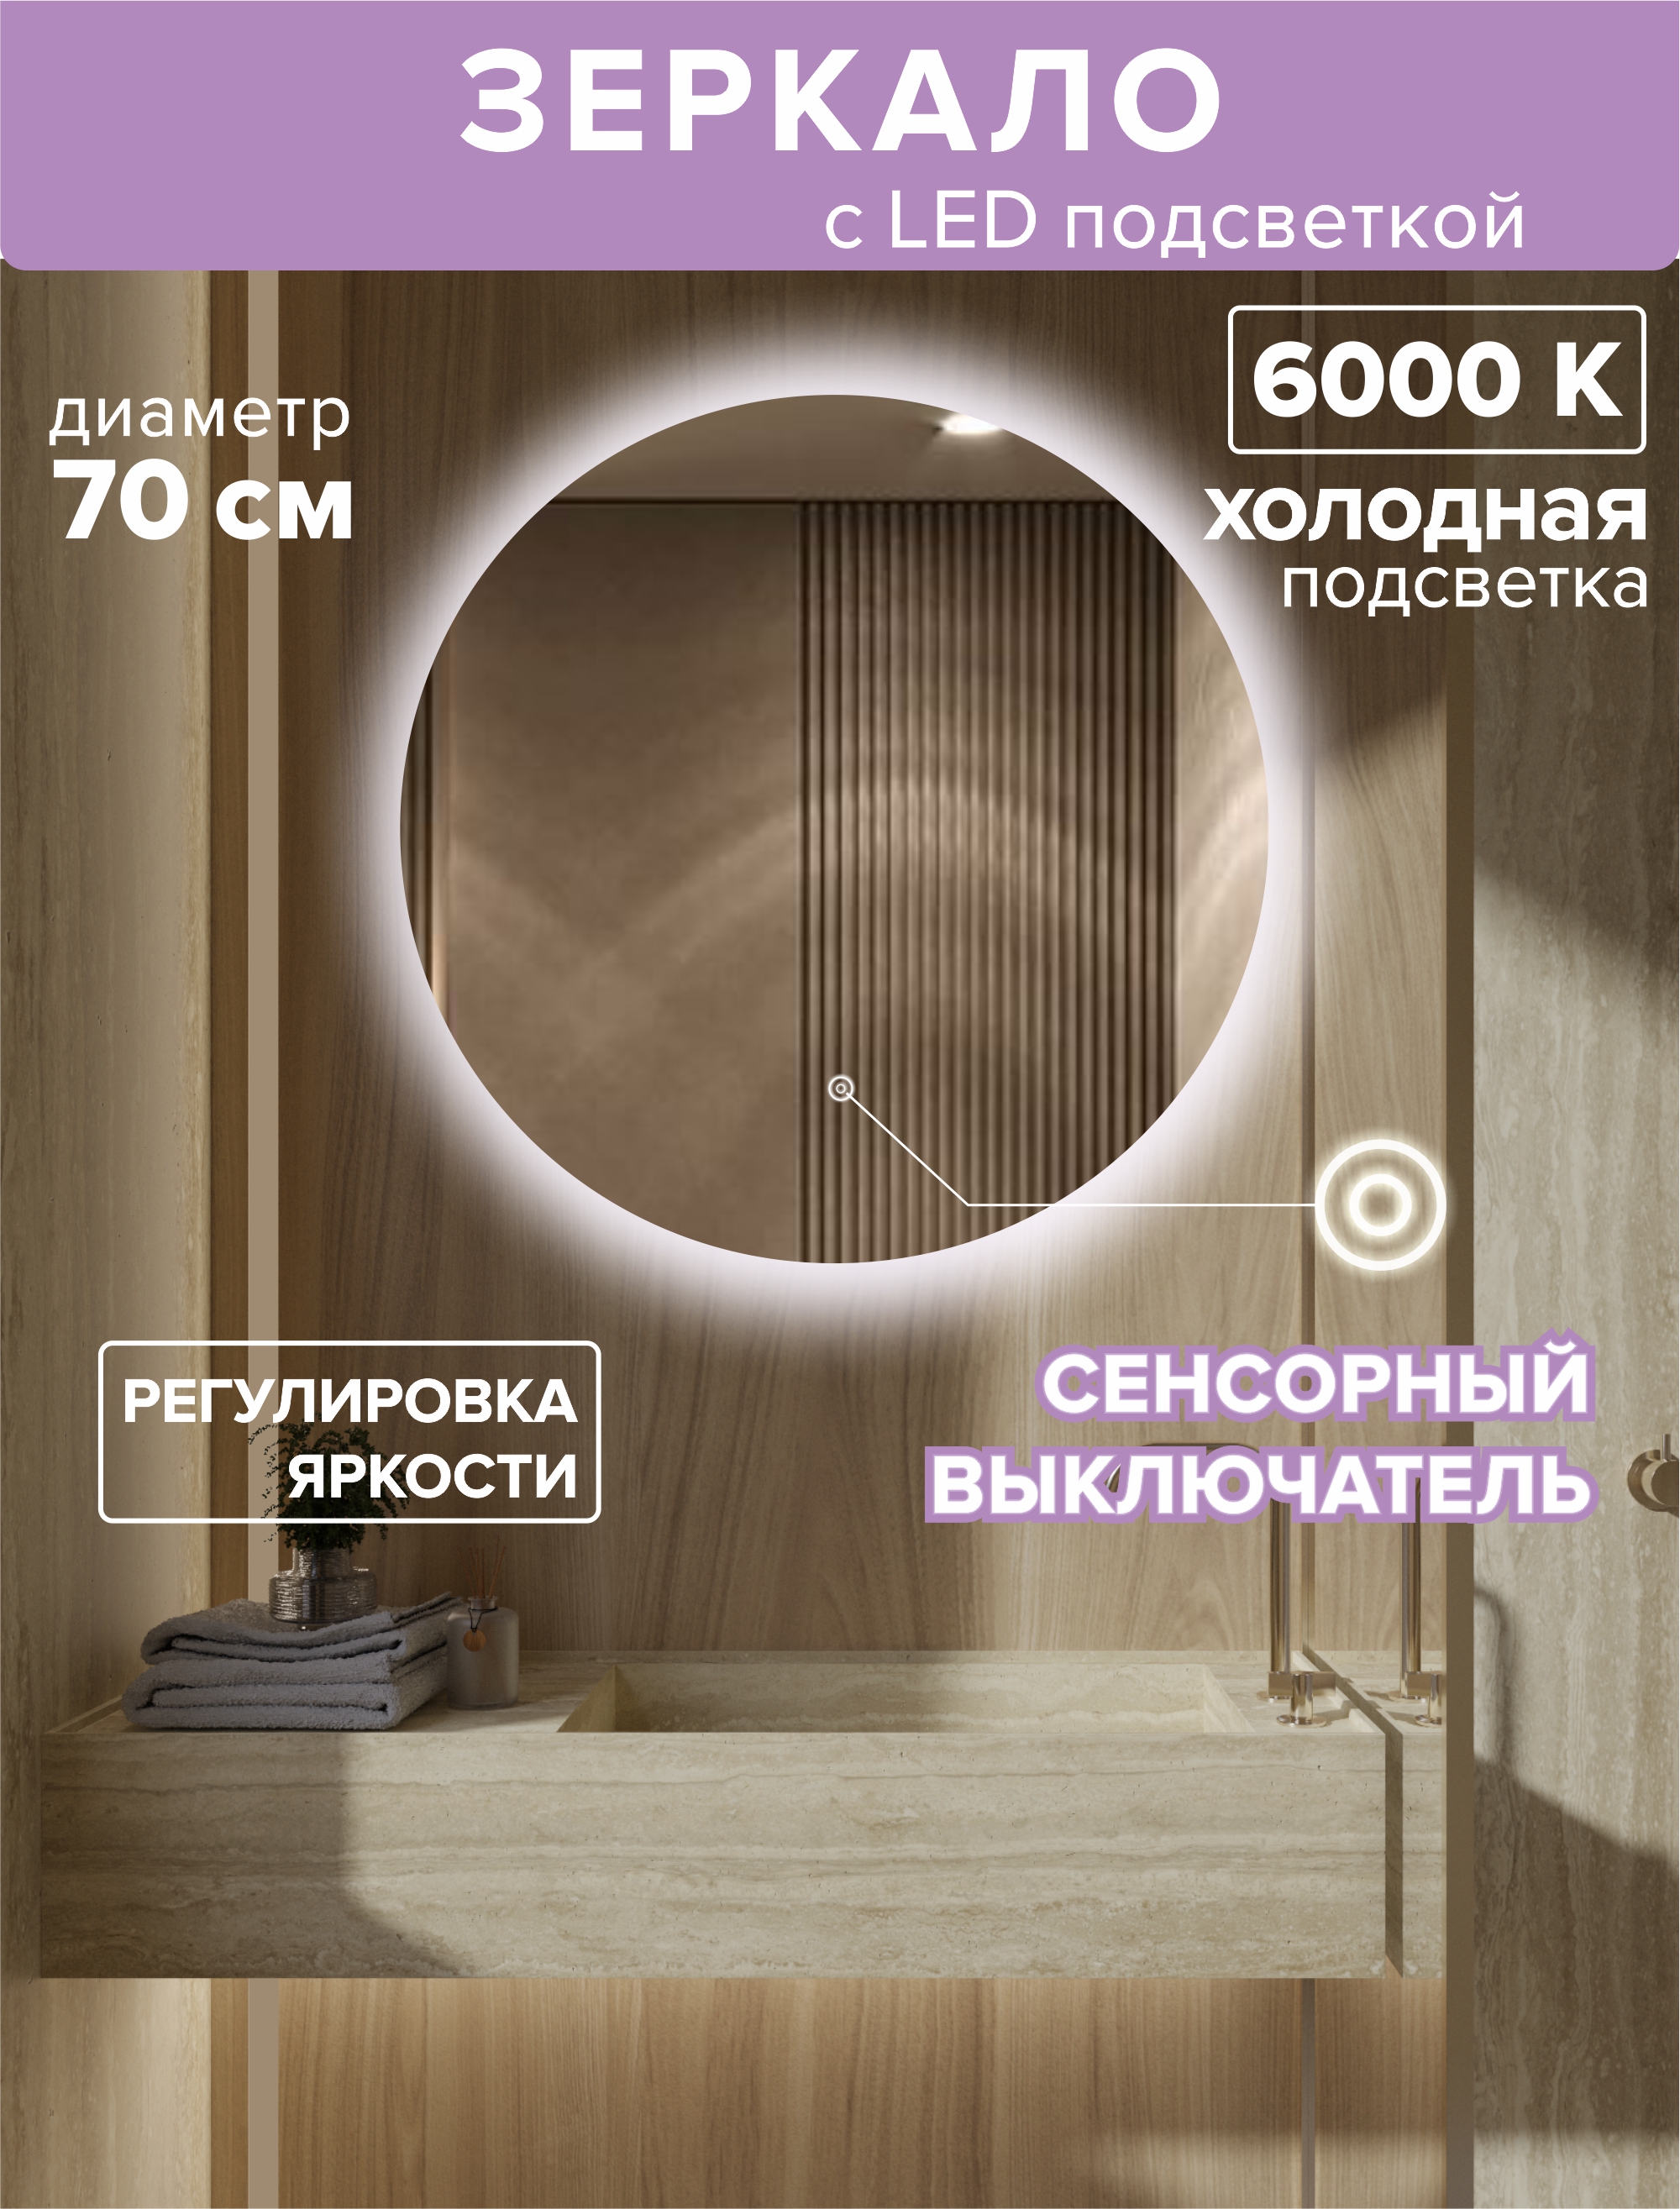 Зеркало с подсветкой круглое 70см. Подсветка холодная (6500К)